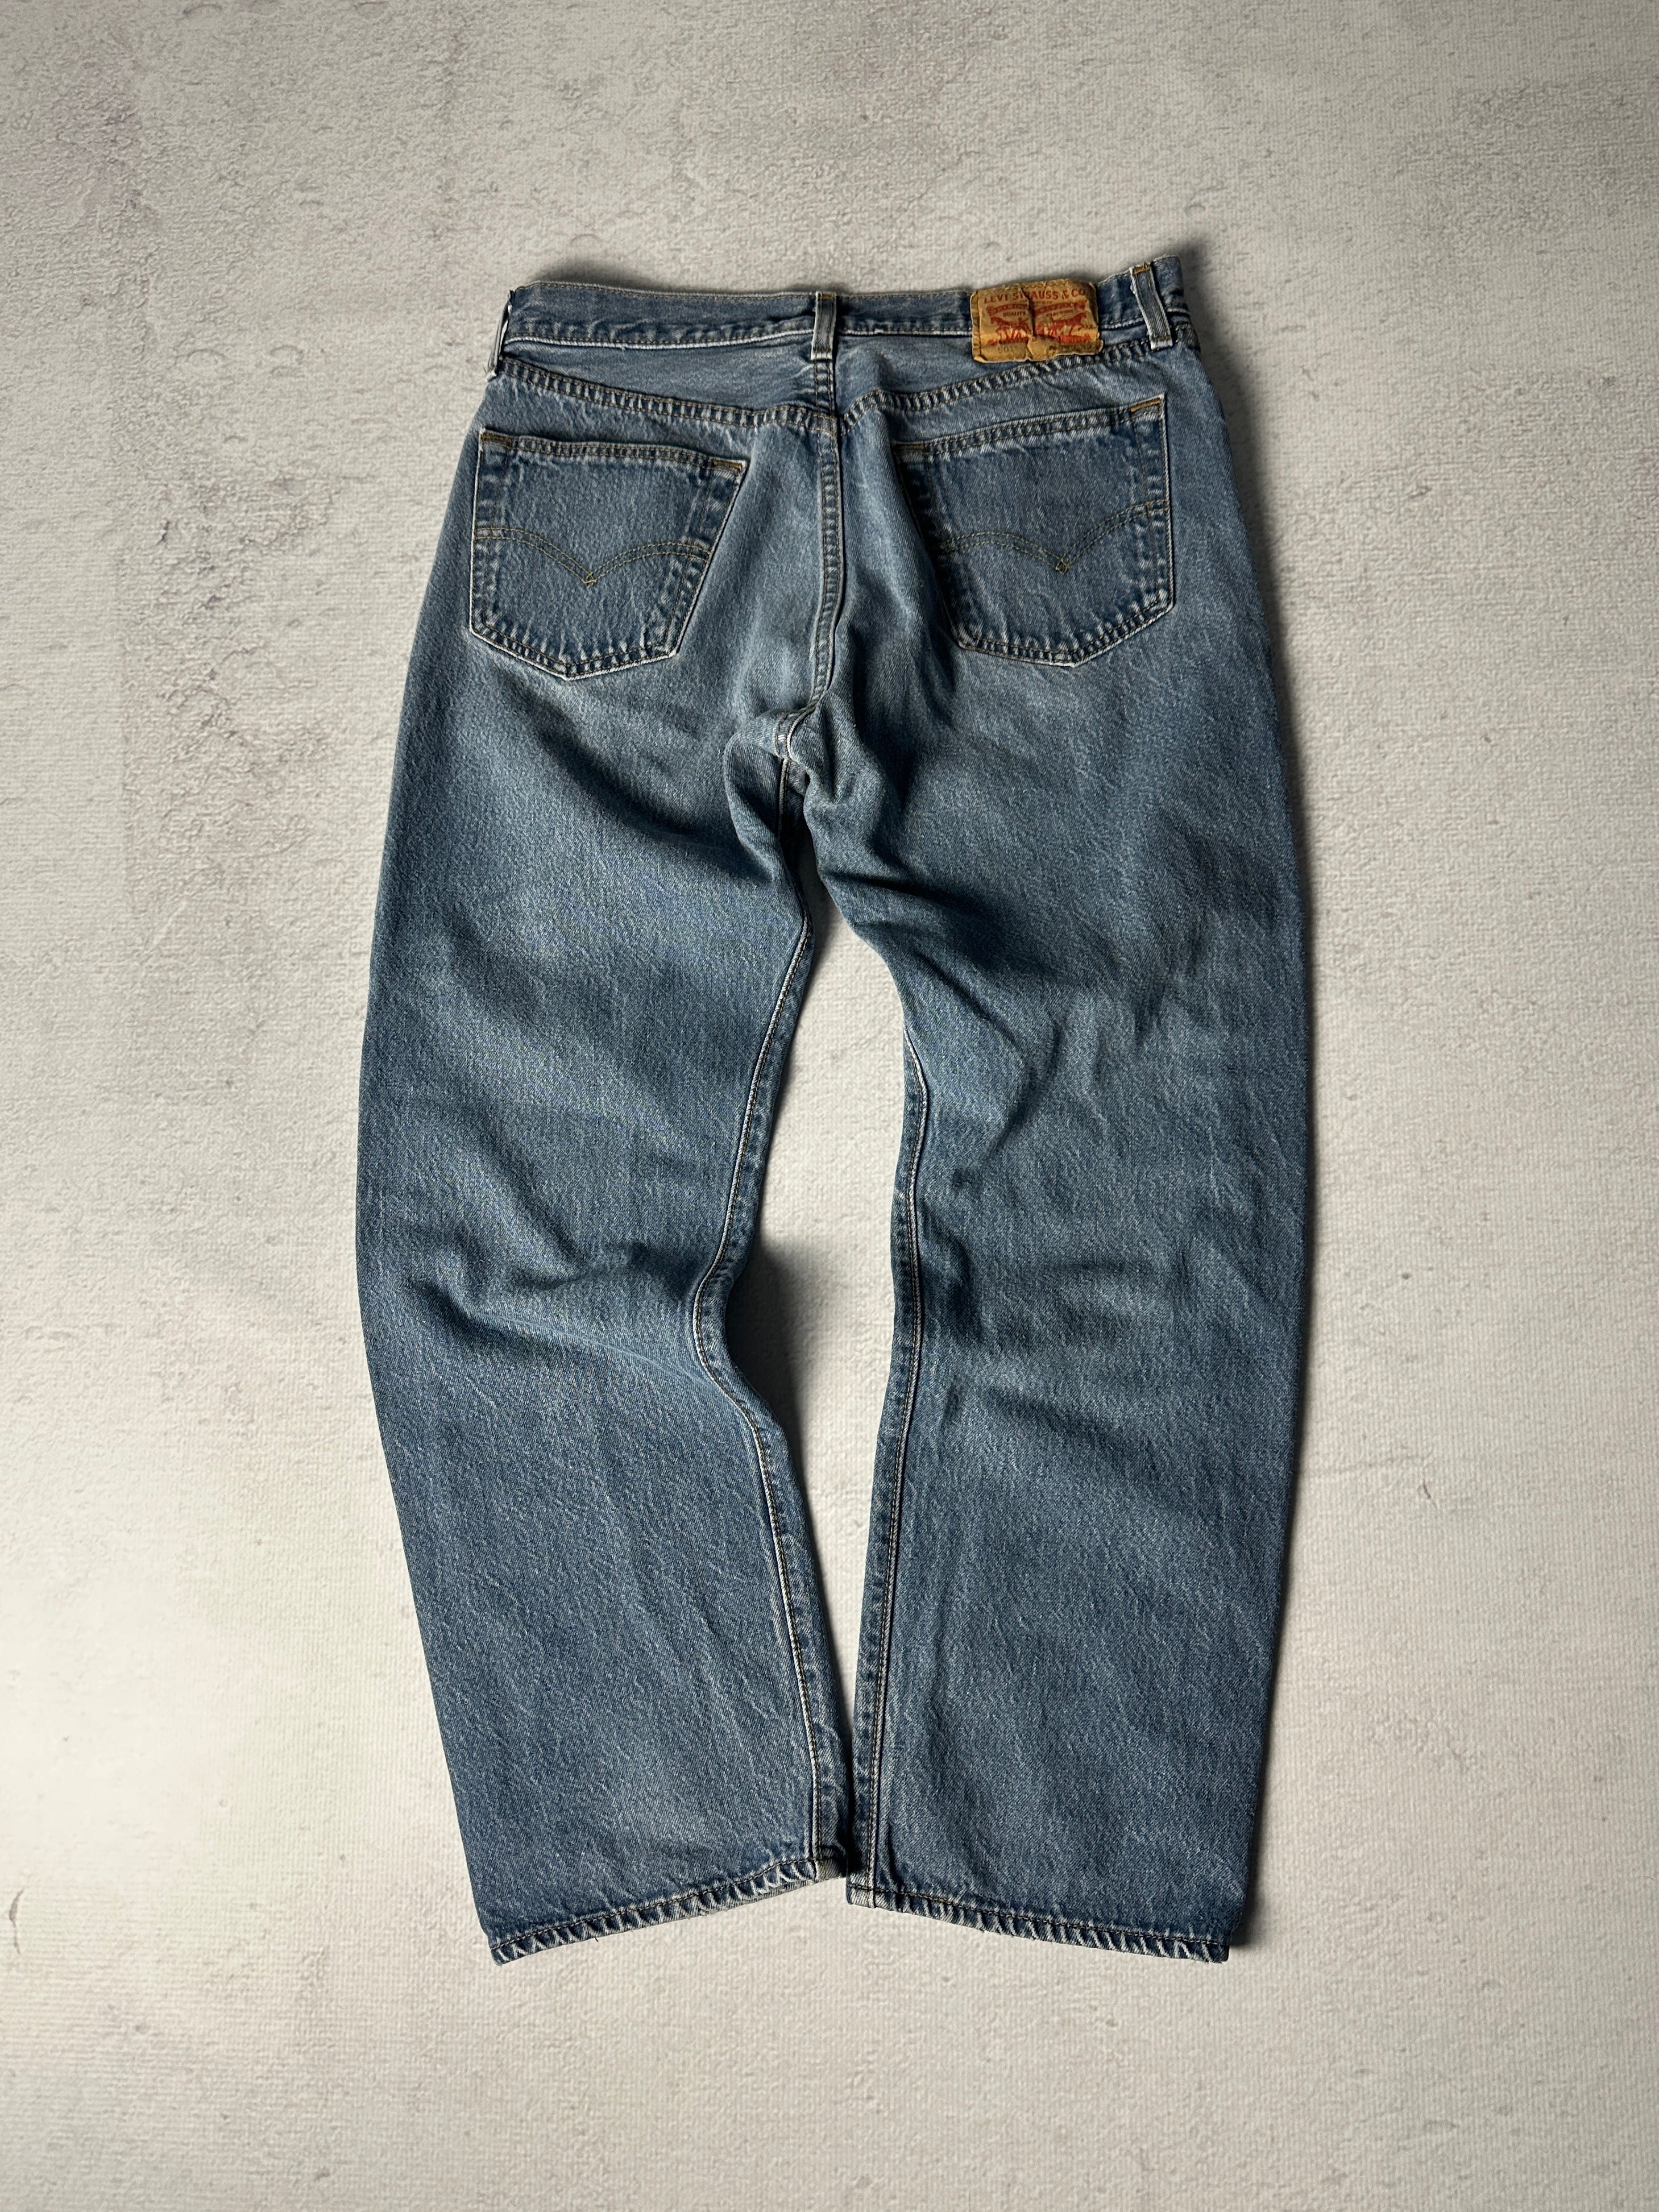 Vintage Levis 550 Jeans - Women's 29W30L